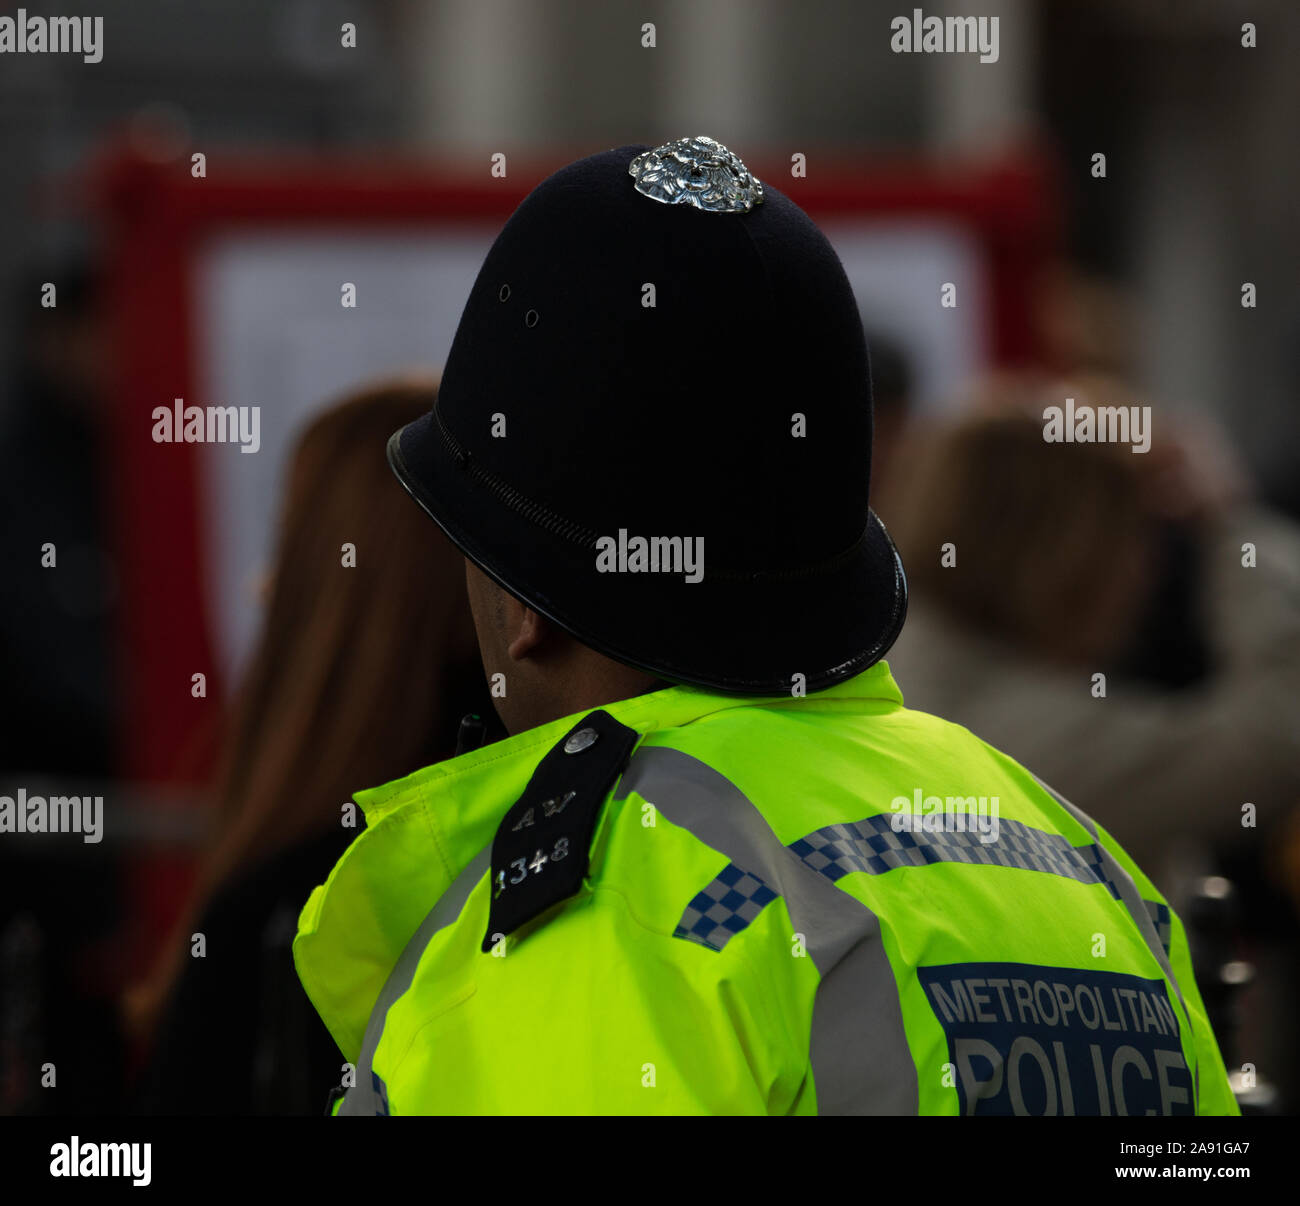 Cámara corporal usada por la policía en Londres, Reino Unido, para mantener  a los oficiales seguros, permitiendo la conciencia de la situación,  mejorando las relaciones comunitarias y proporcionando evidencia Fotografía  de stock 